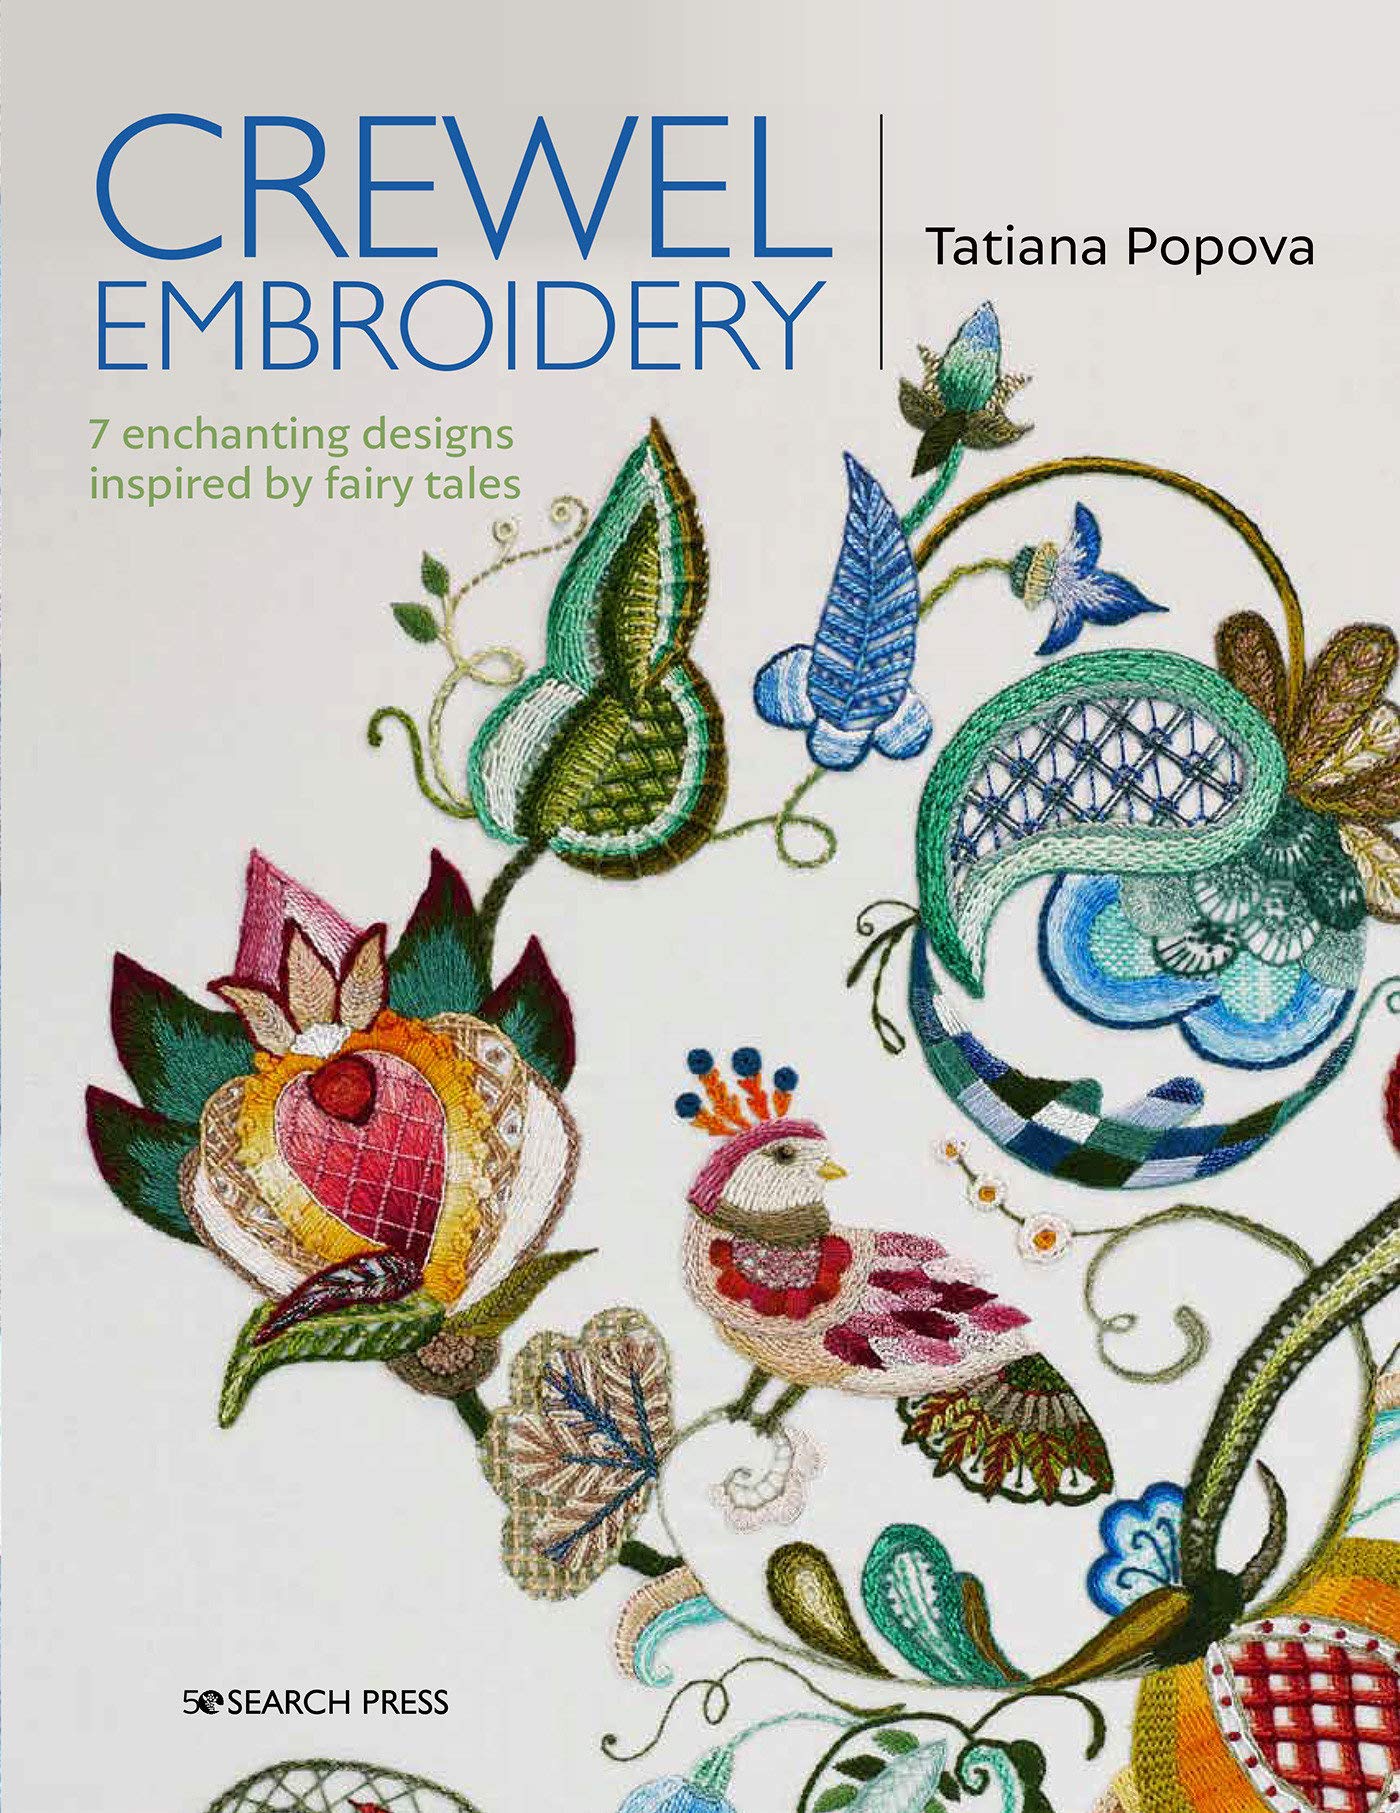 Crewel Embroidery by Tatiana Popova